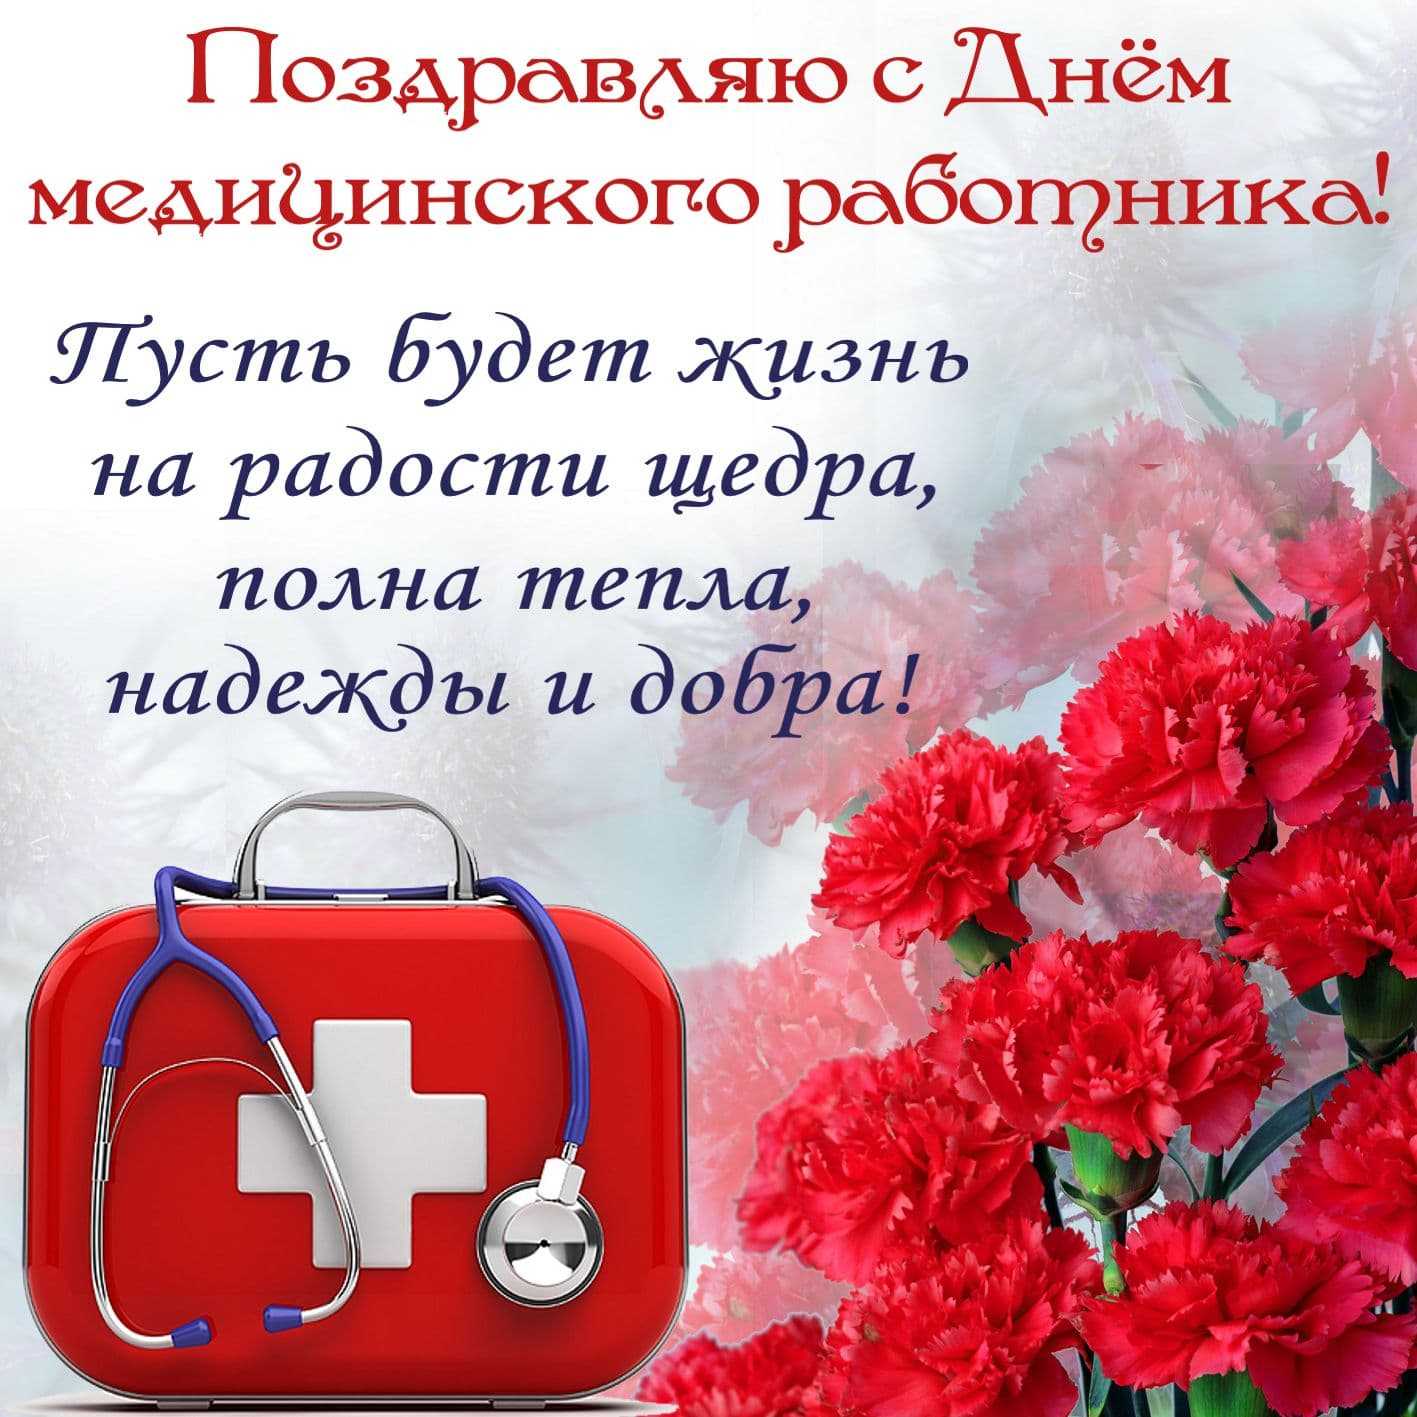 Официальные поздравления с днем медицинского работника (медикам) | всё для праздника